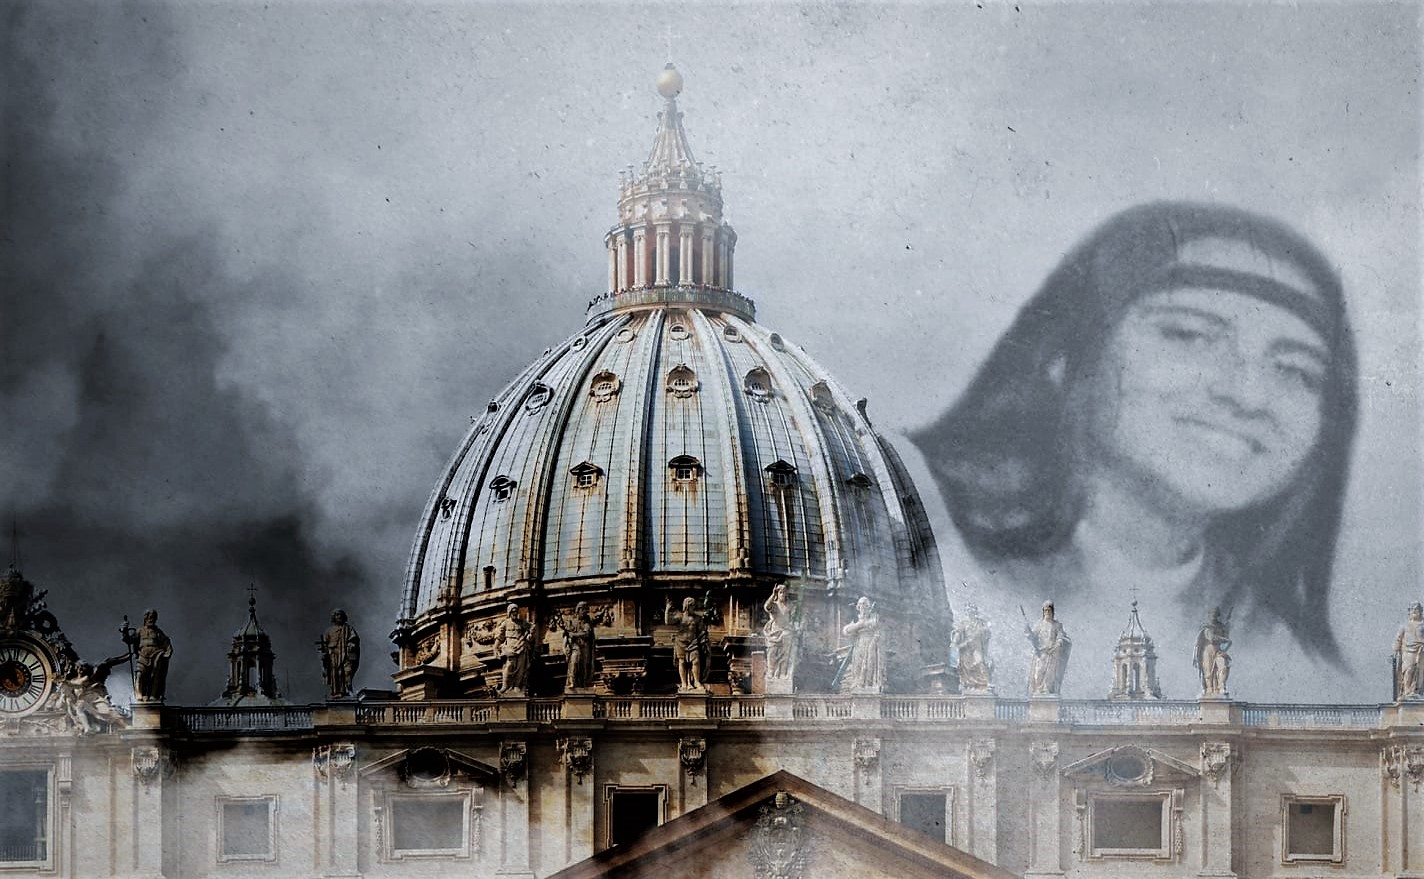 Buscando a una menor desaparecida en el Vaticano descubren miles de huesos (Video)